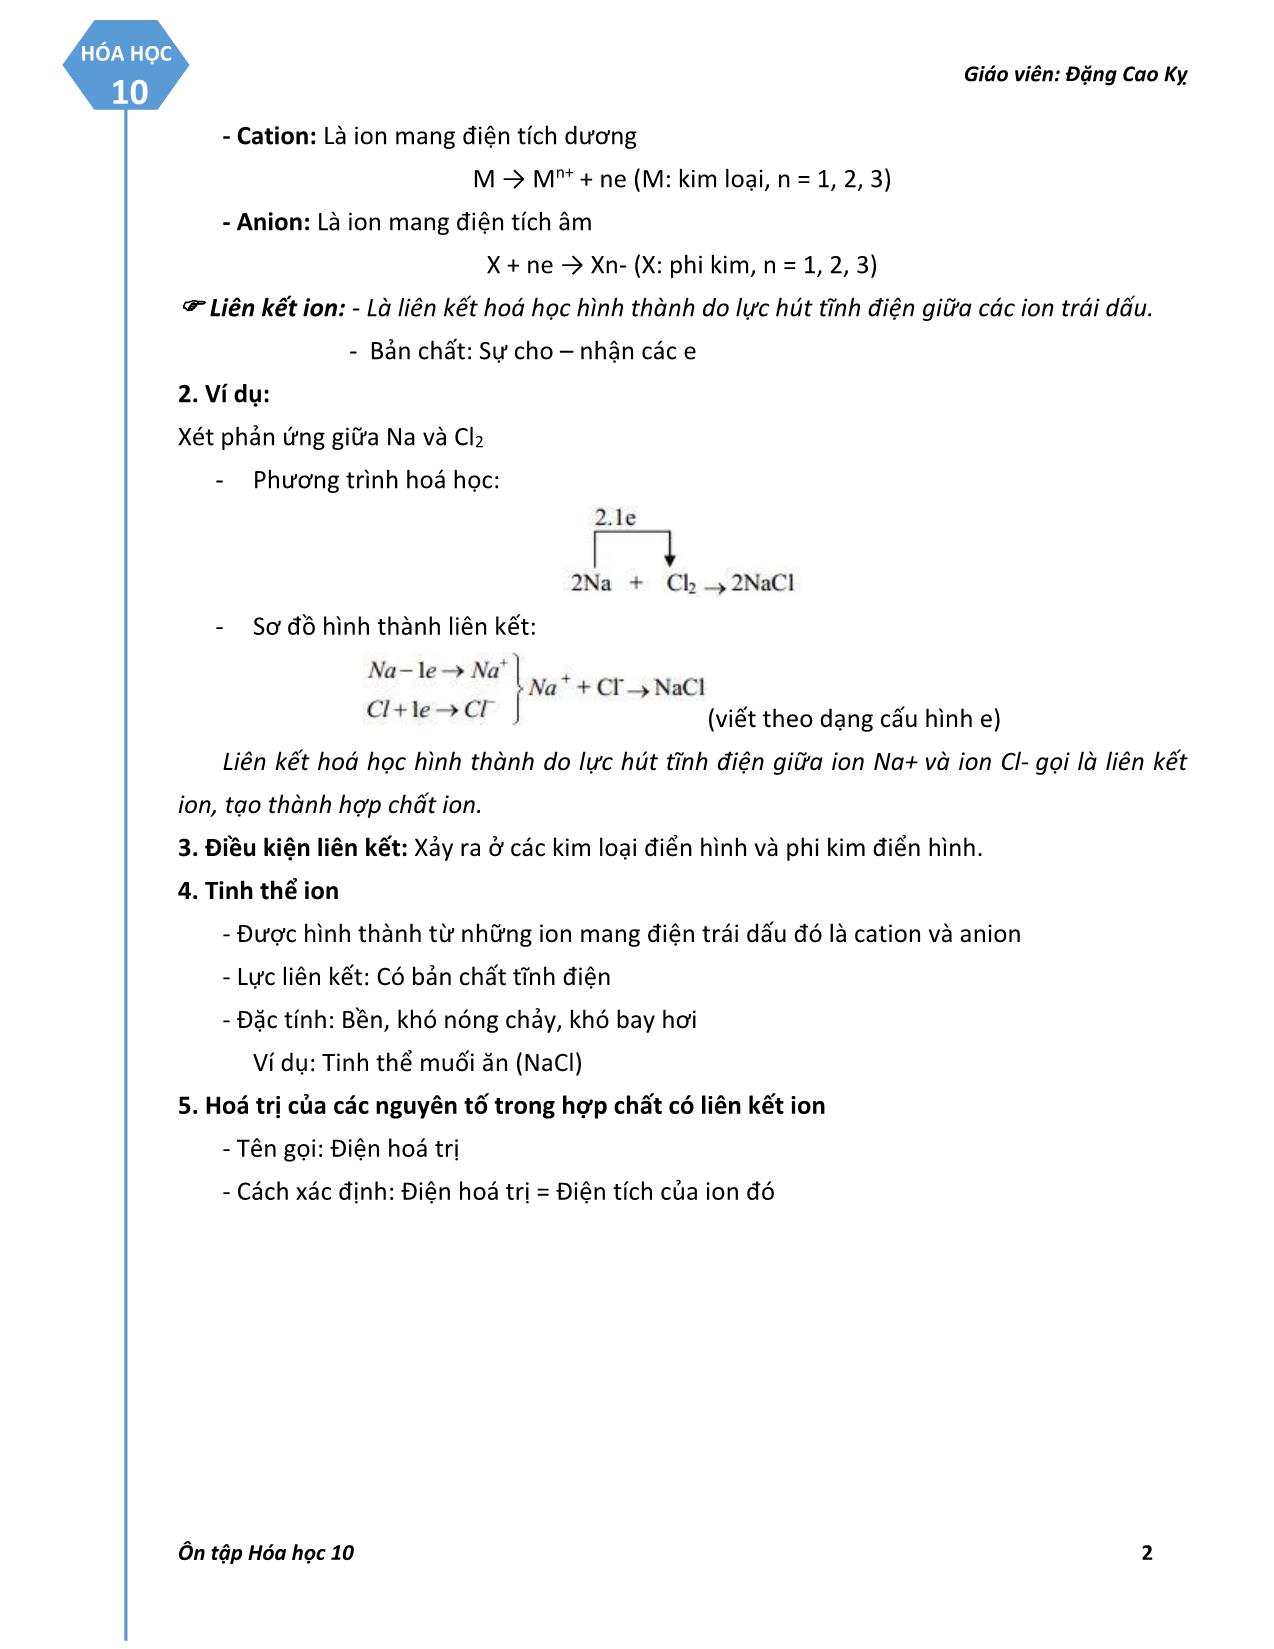 Giáo án Hóa học 10 - Chương III: Liên kết hóa học trang 2